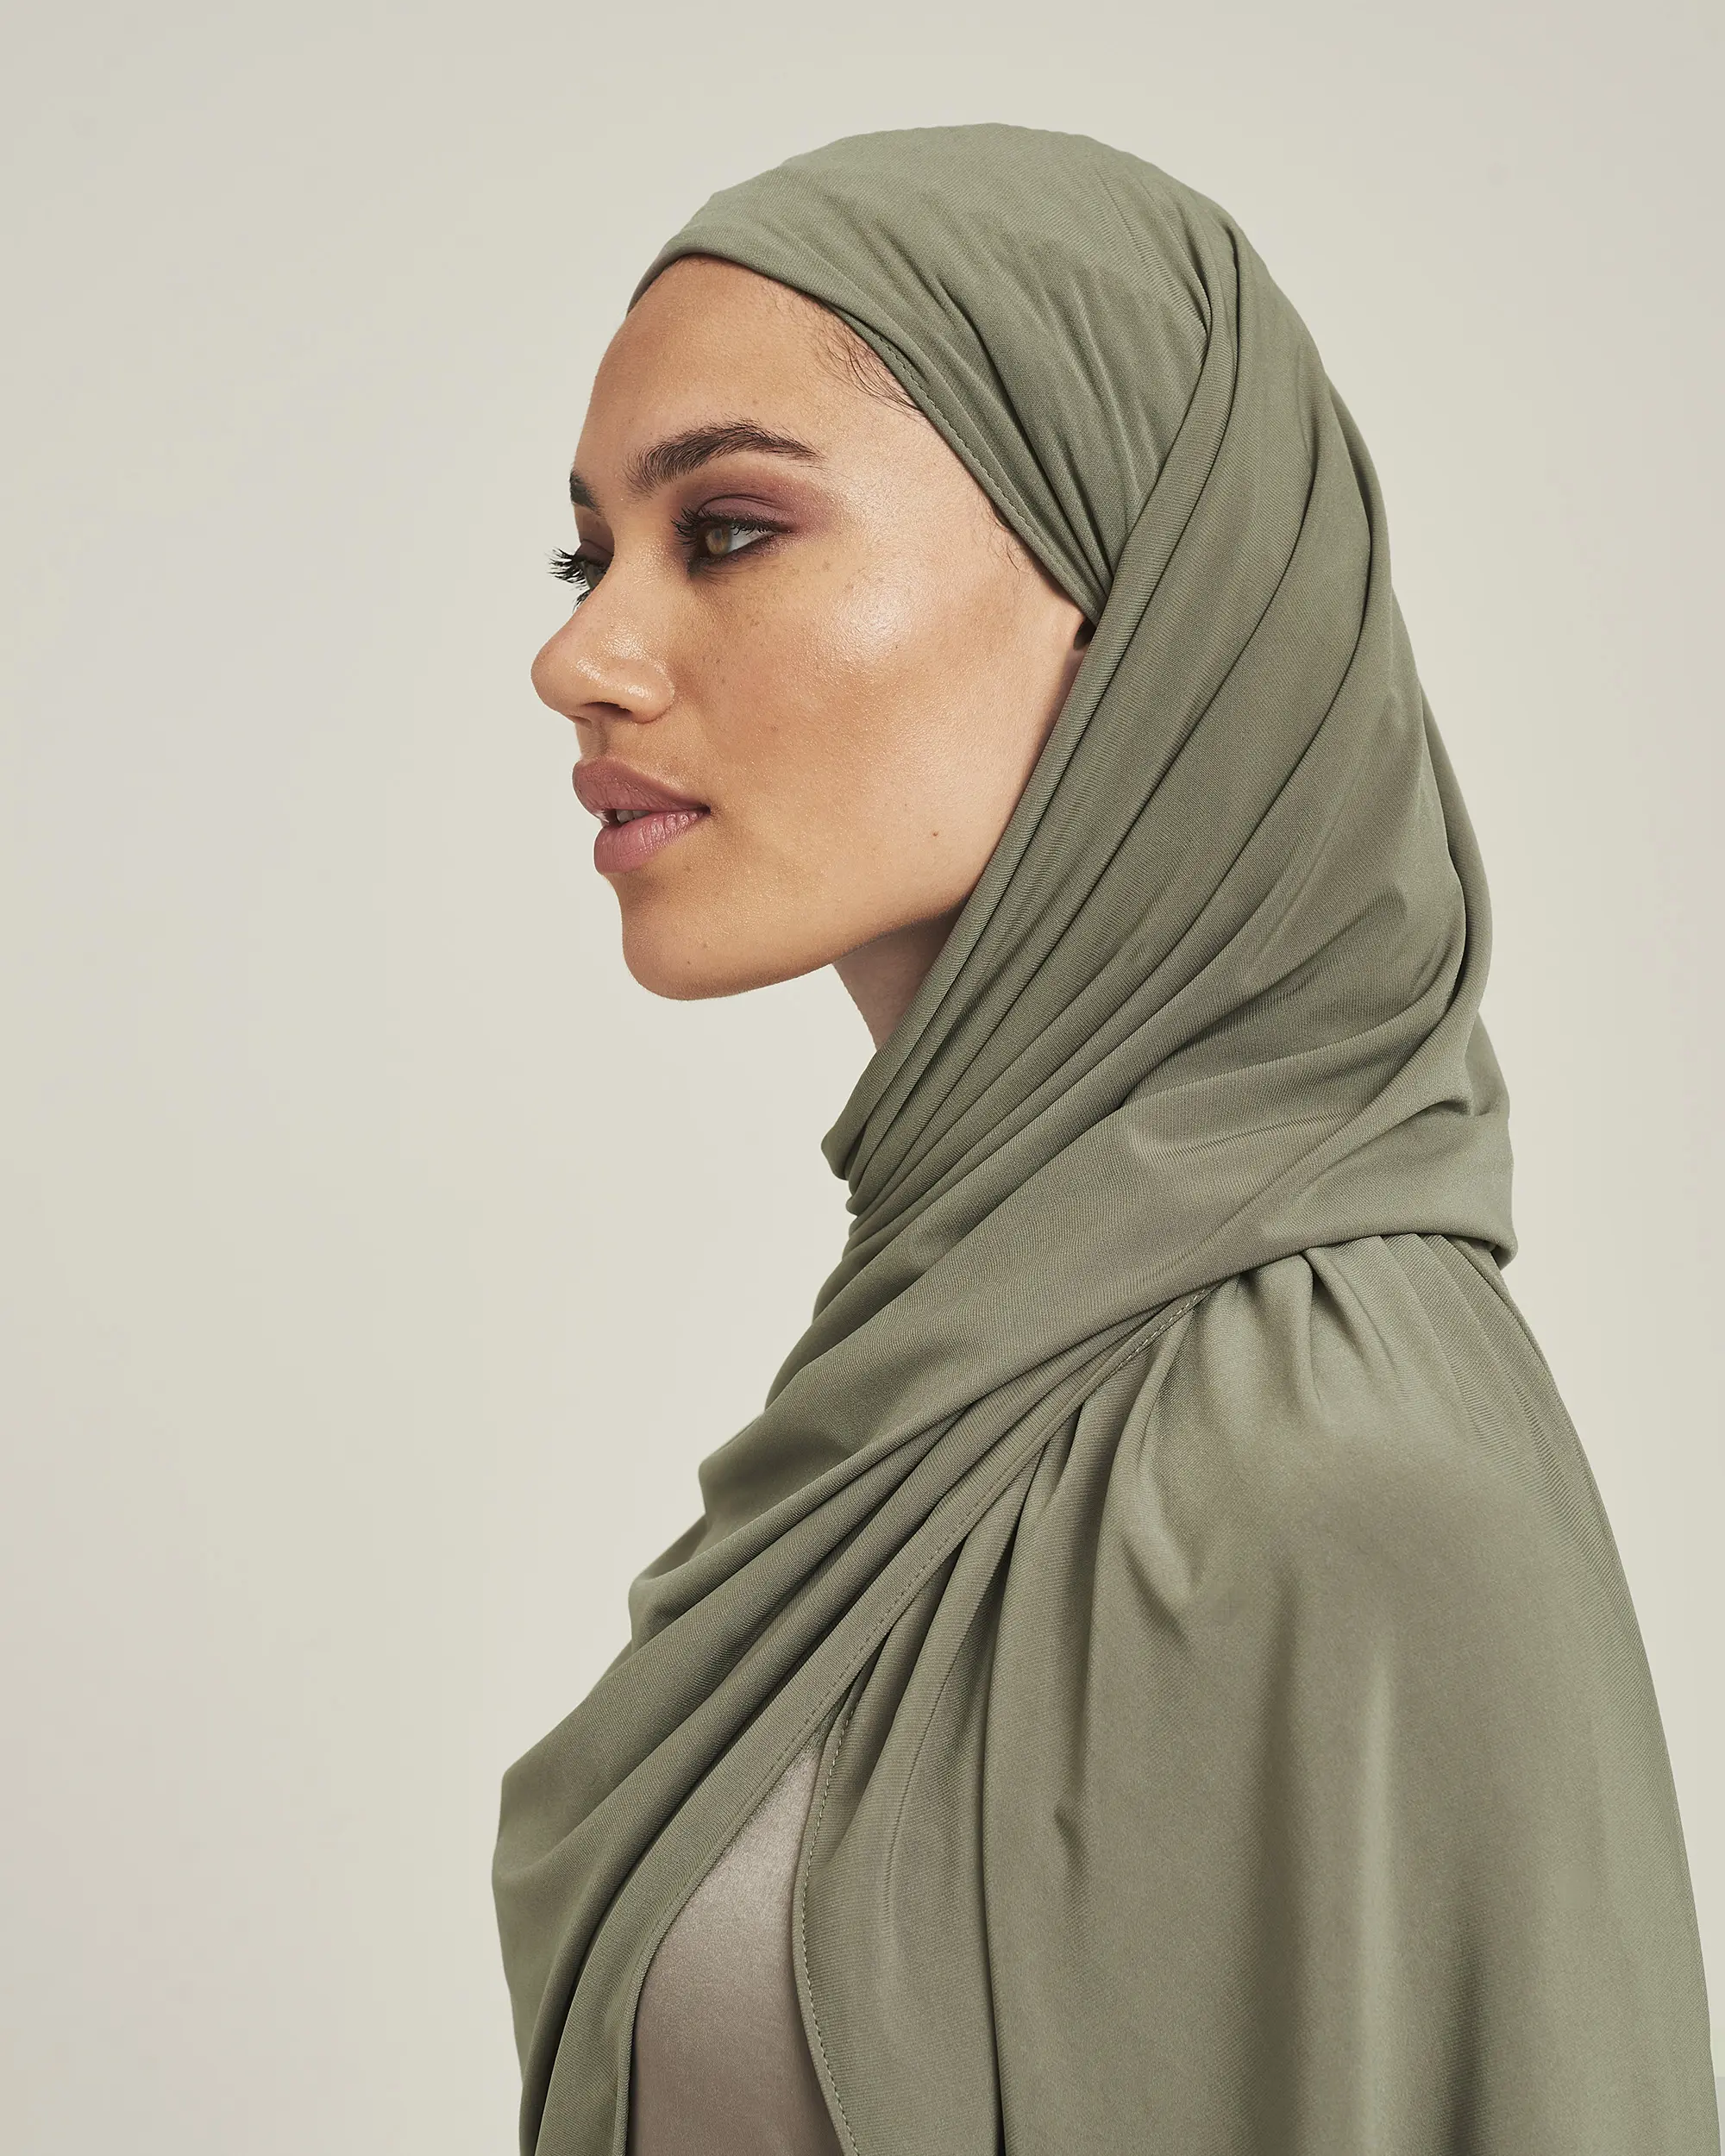 Chales de lycra de alta gama para mujeres musulmanas, jersey liso y amigable con la piel, hijab, bufanda, otros chales